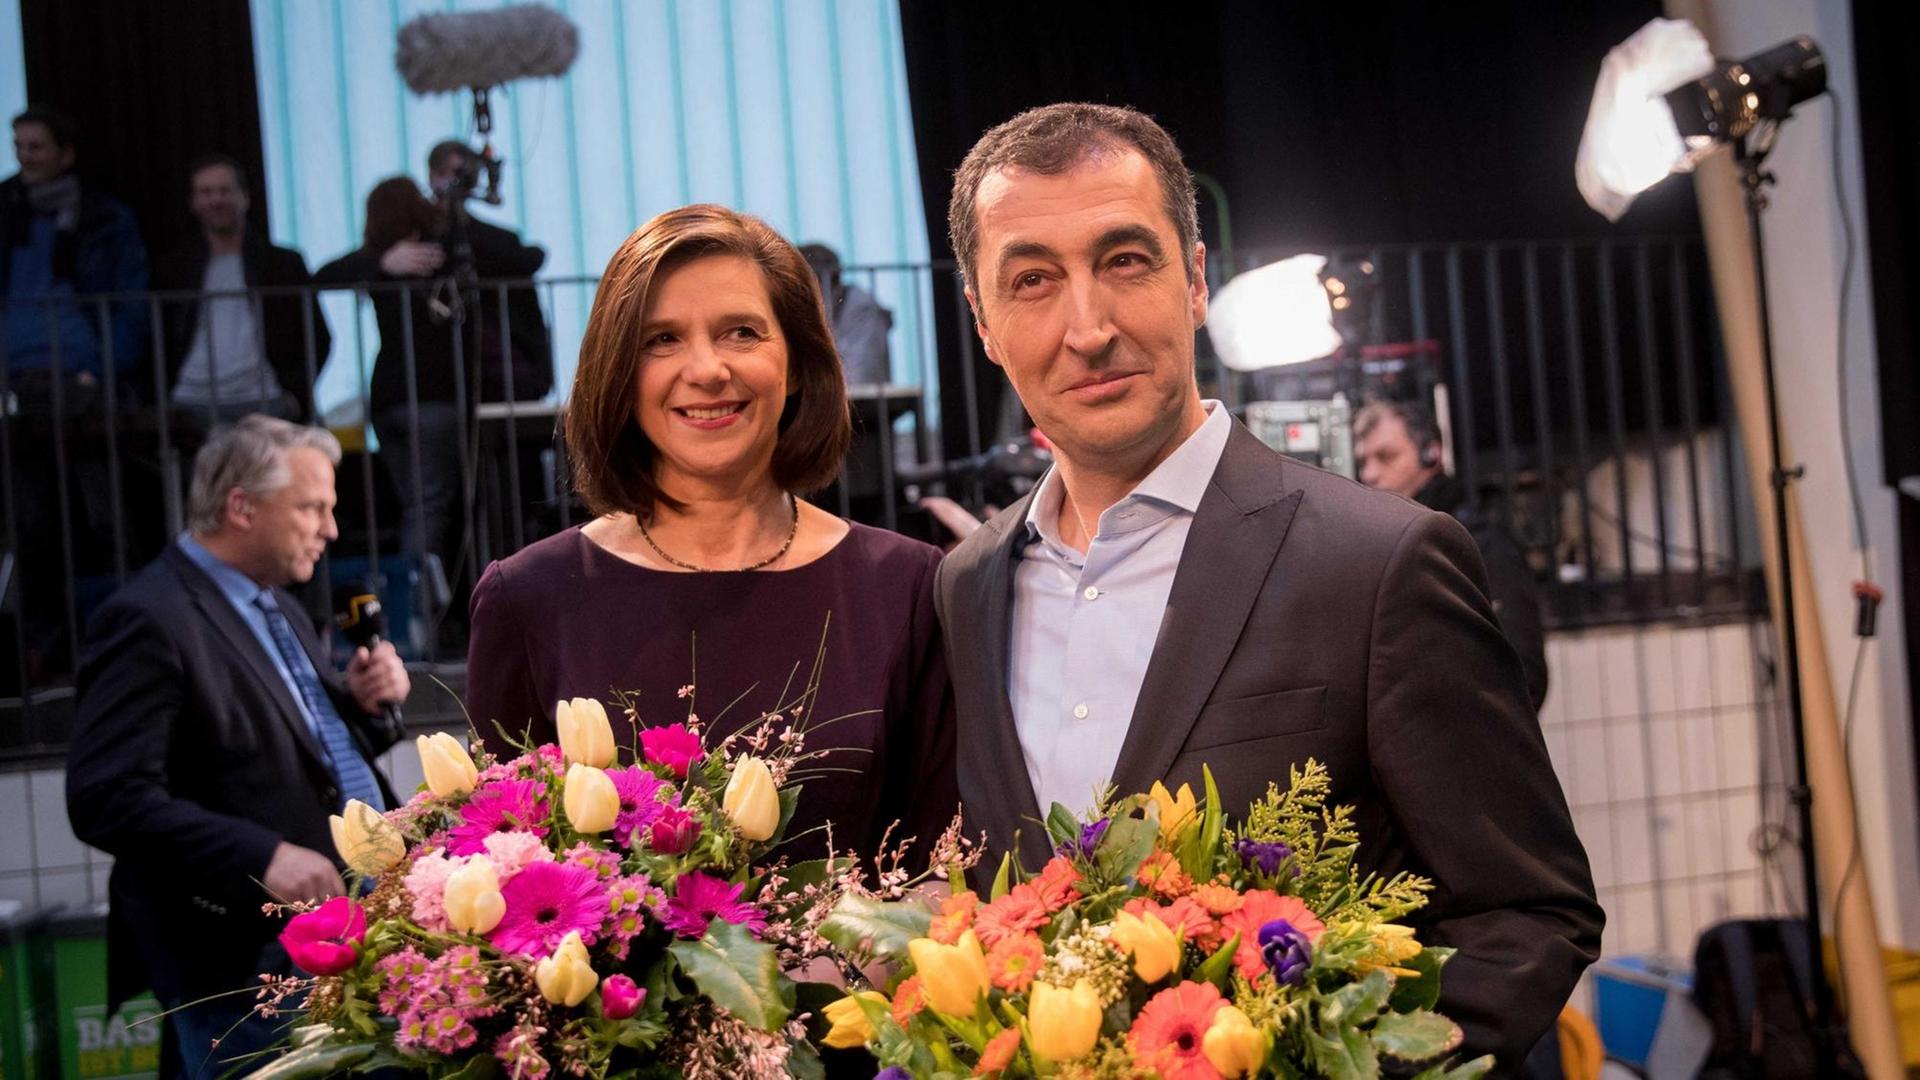 Cem Özdemir, Parteivorsitzender von Bündnis 90/Die Grünen, und die Fraktionsvorsitzende der Grünen im Bundestag, Katrin Göring-Eckardt, halten Blumensträuße in der Hand. Sie haben als Spitzenkandidaten ihrer Partei für die Bundestagswahl eine Pressekonferenz gegeben.